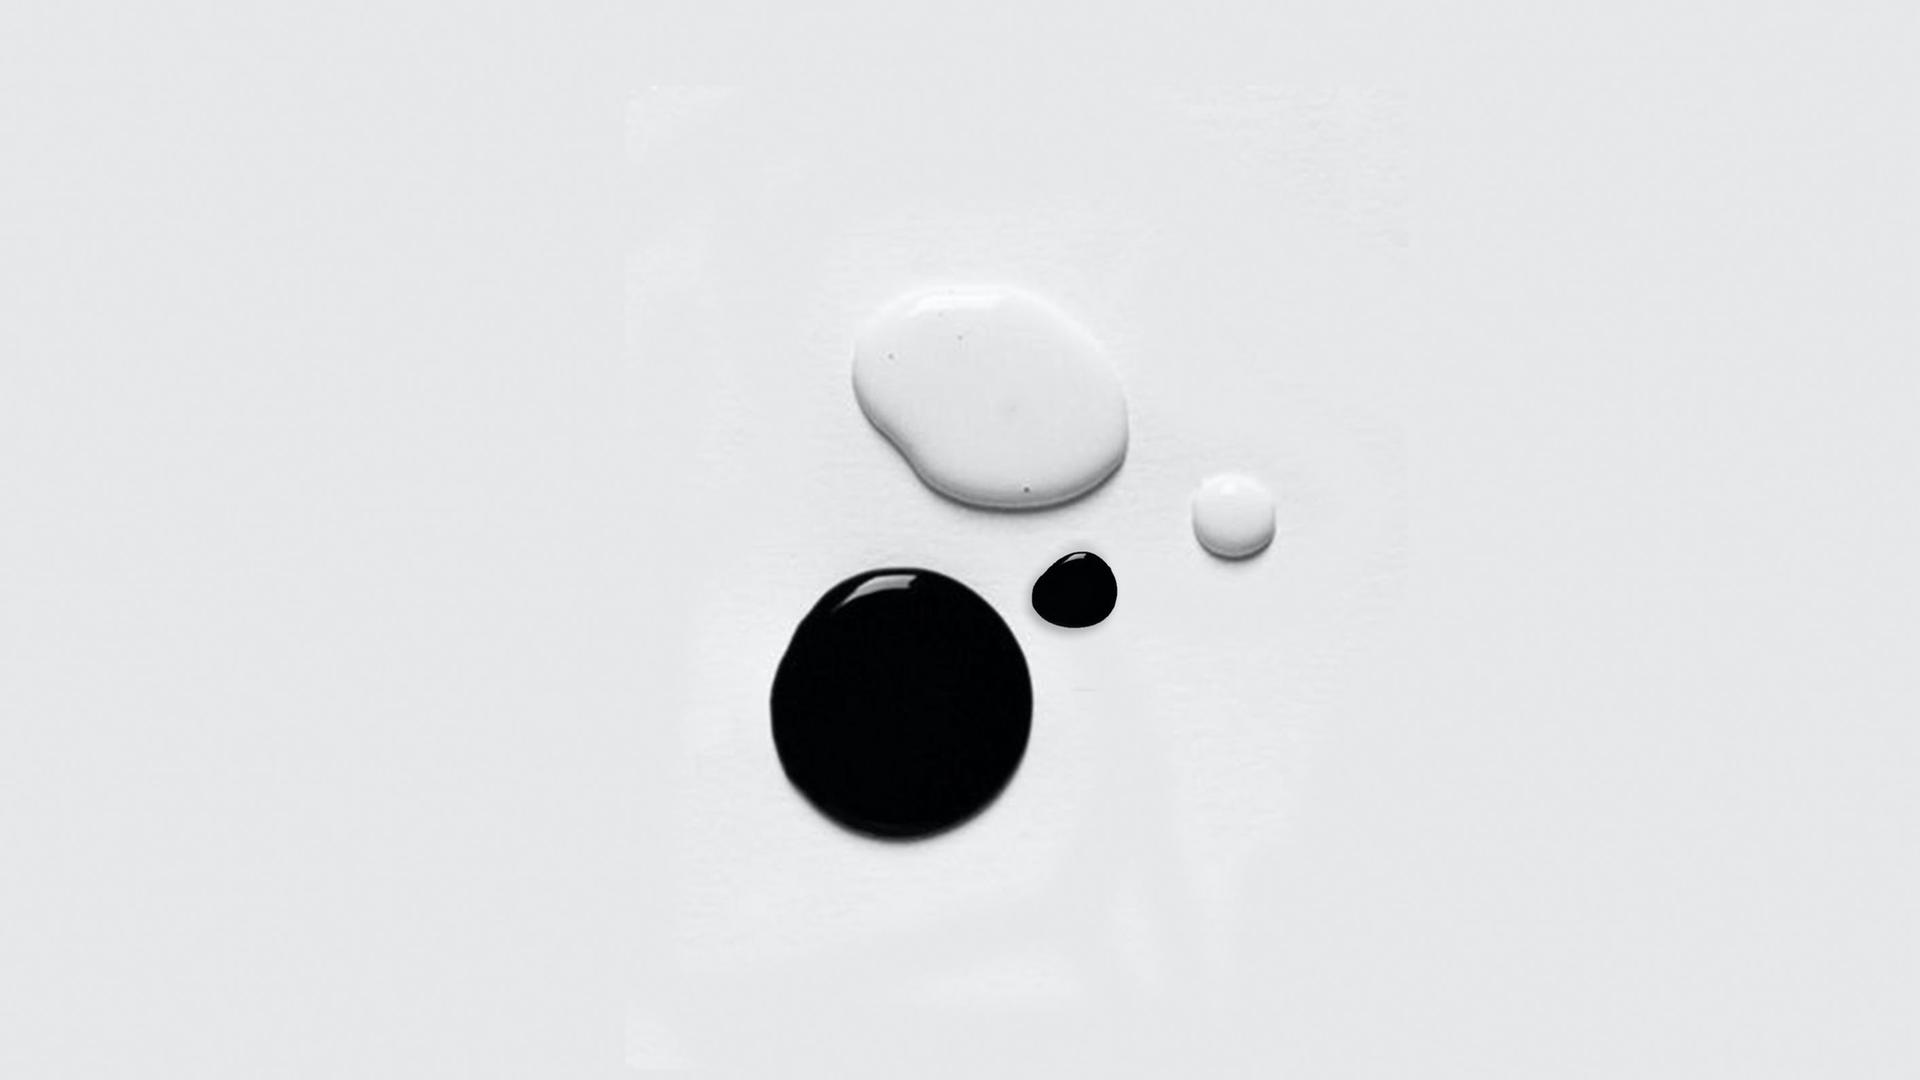 Zwei Farbkleckse, einer schwarz der andere weiß, liegen auf einem hellen Grund auf.